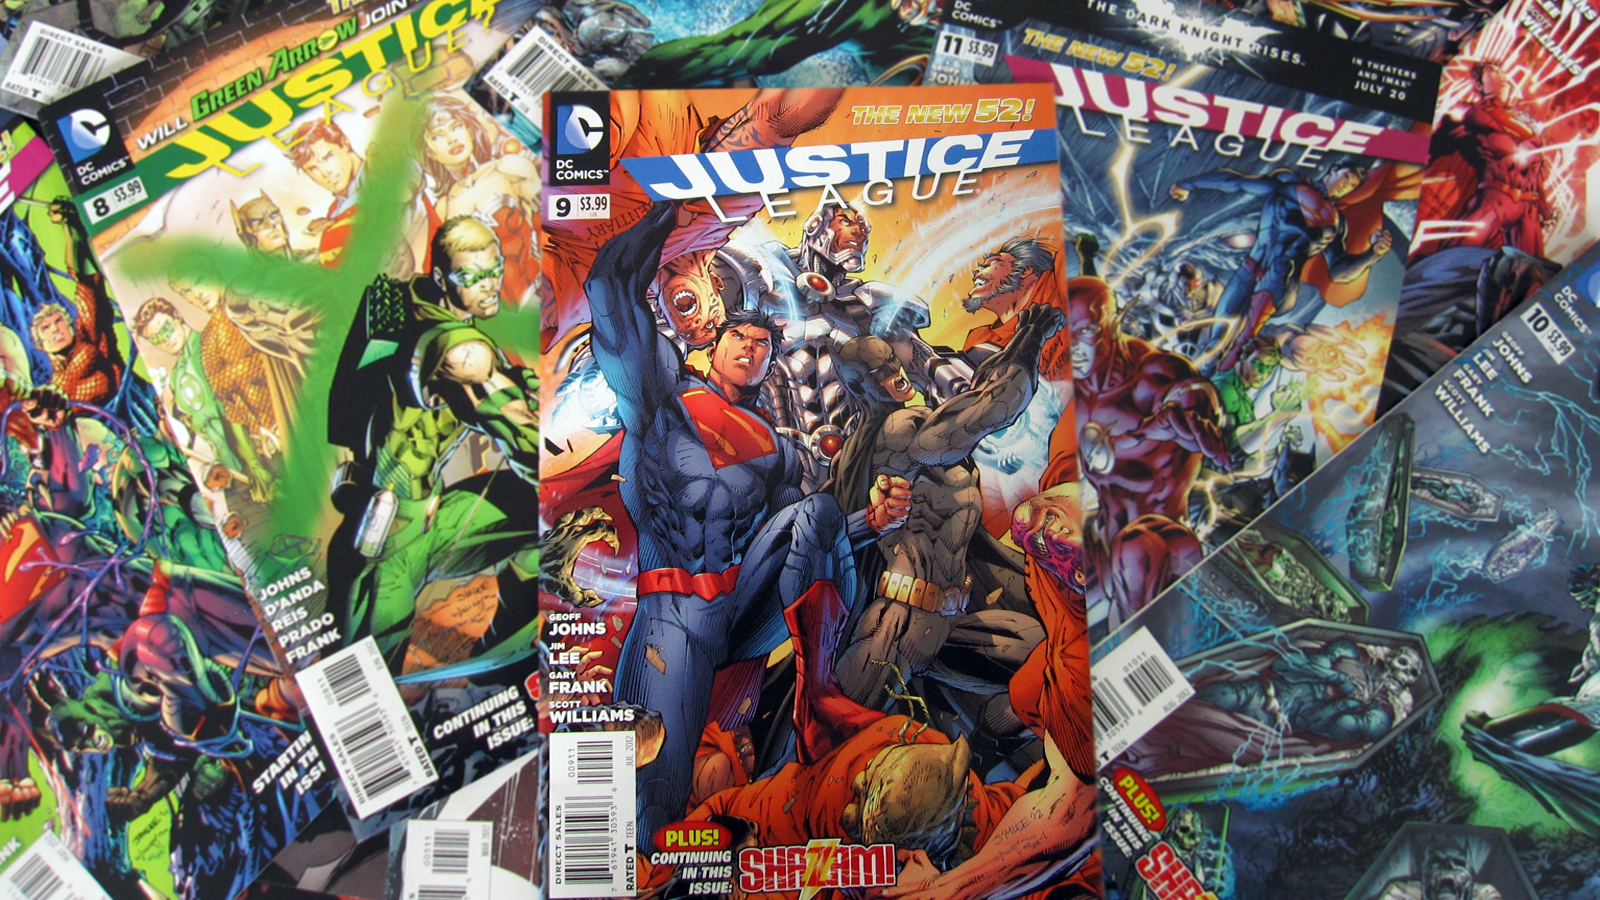 Batman New 52 Wallpaper Hd Justice league   the new 52